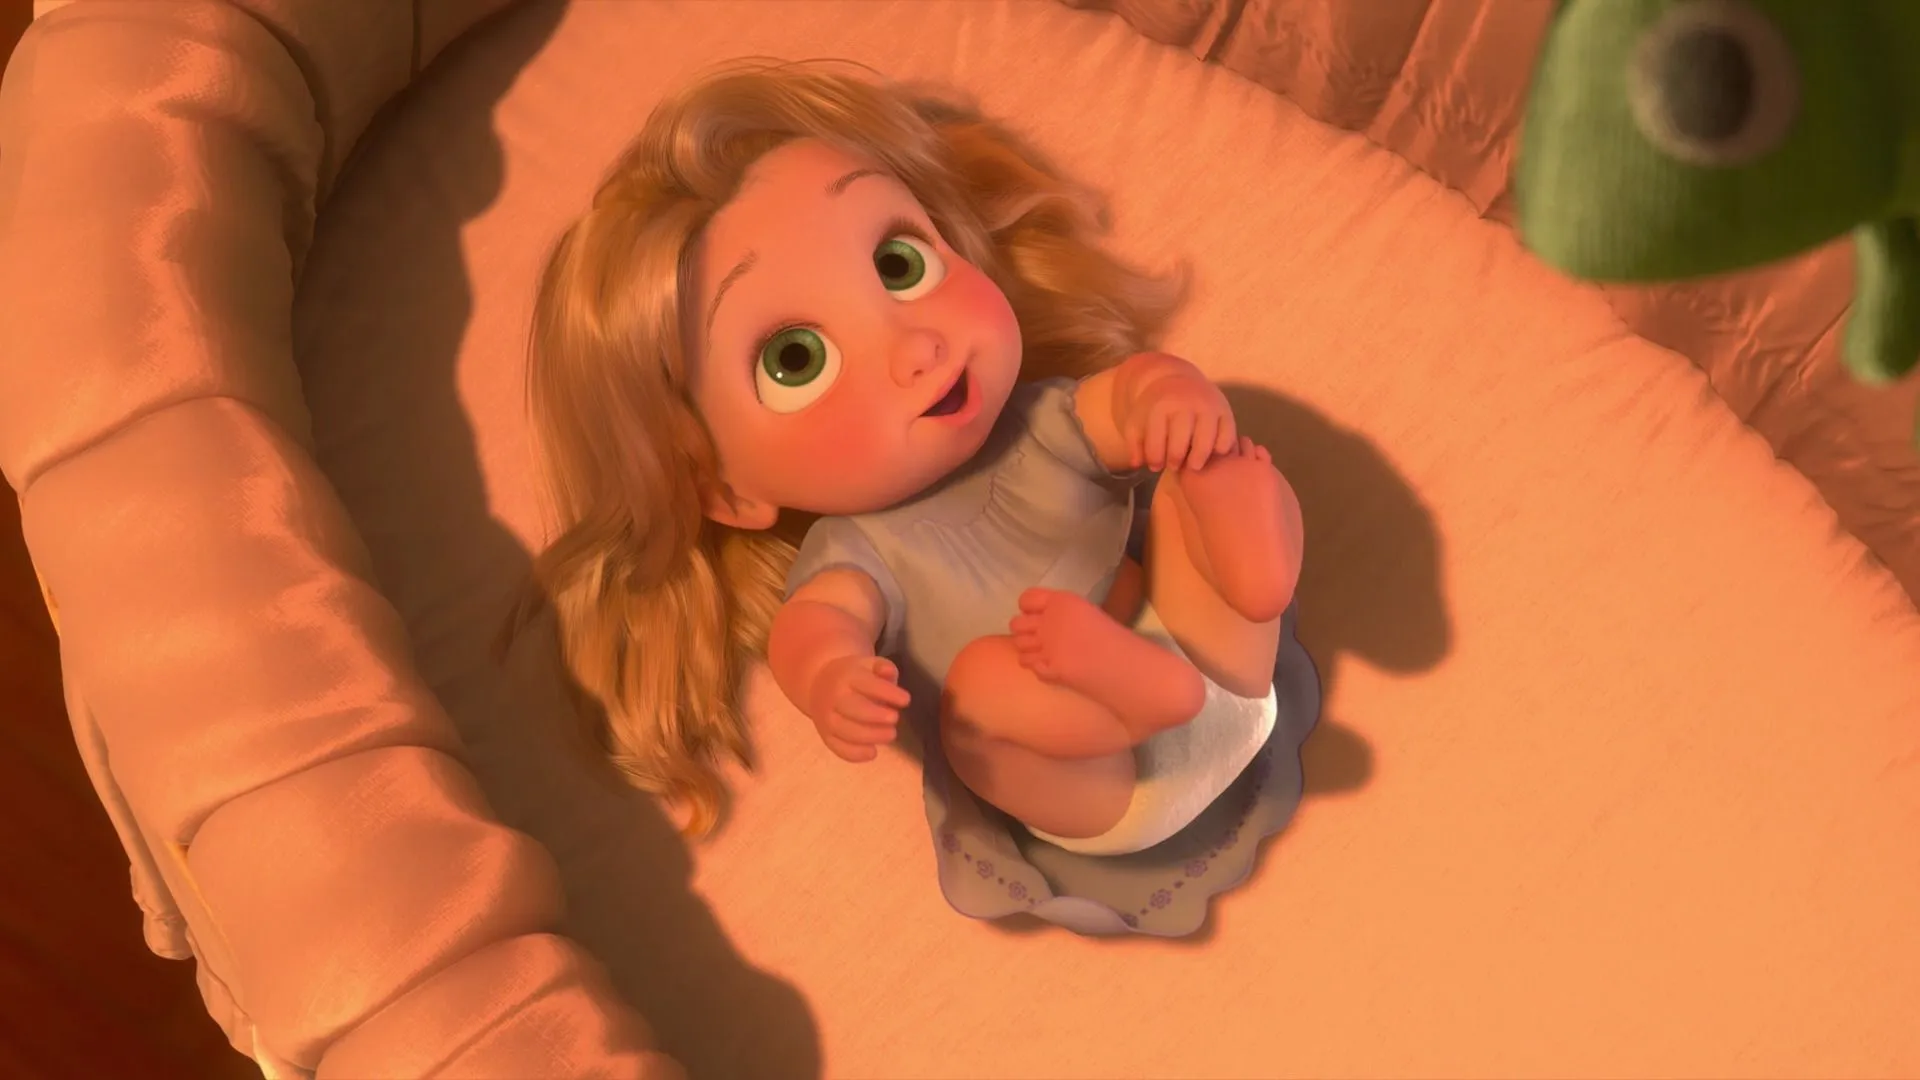 Image - Tangled baby Rapunzel.jpg - DisneyWiki